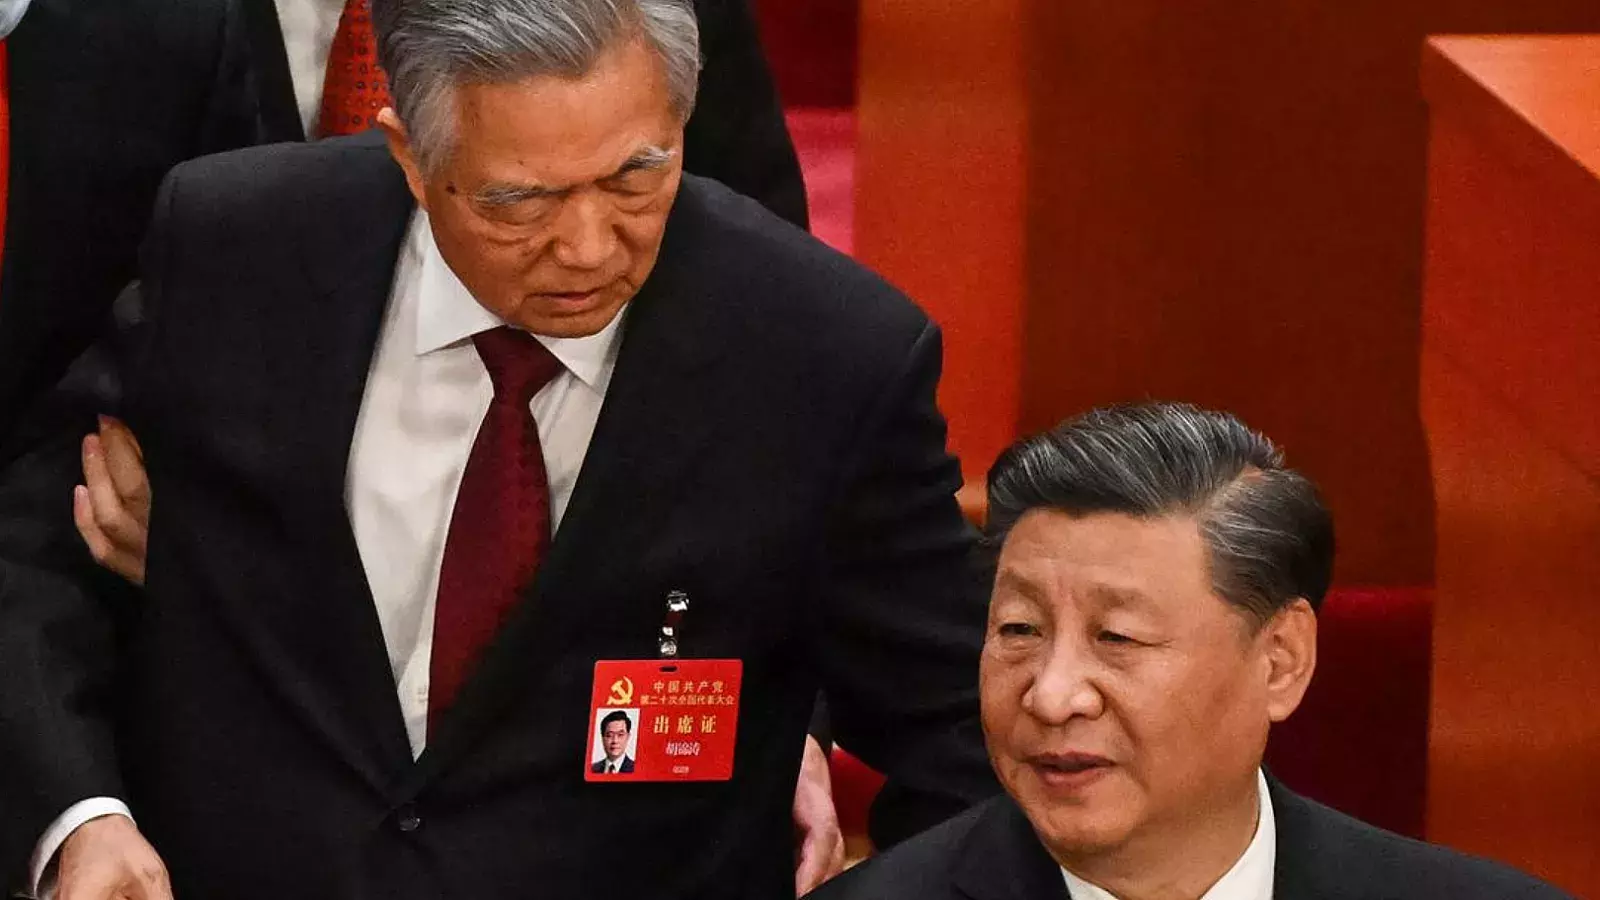 VIDEO: Momento en que el ex presidente chino Hu Jintao es expulsado del Congreso del Partido Comunista